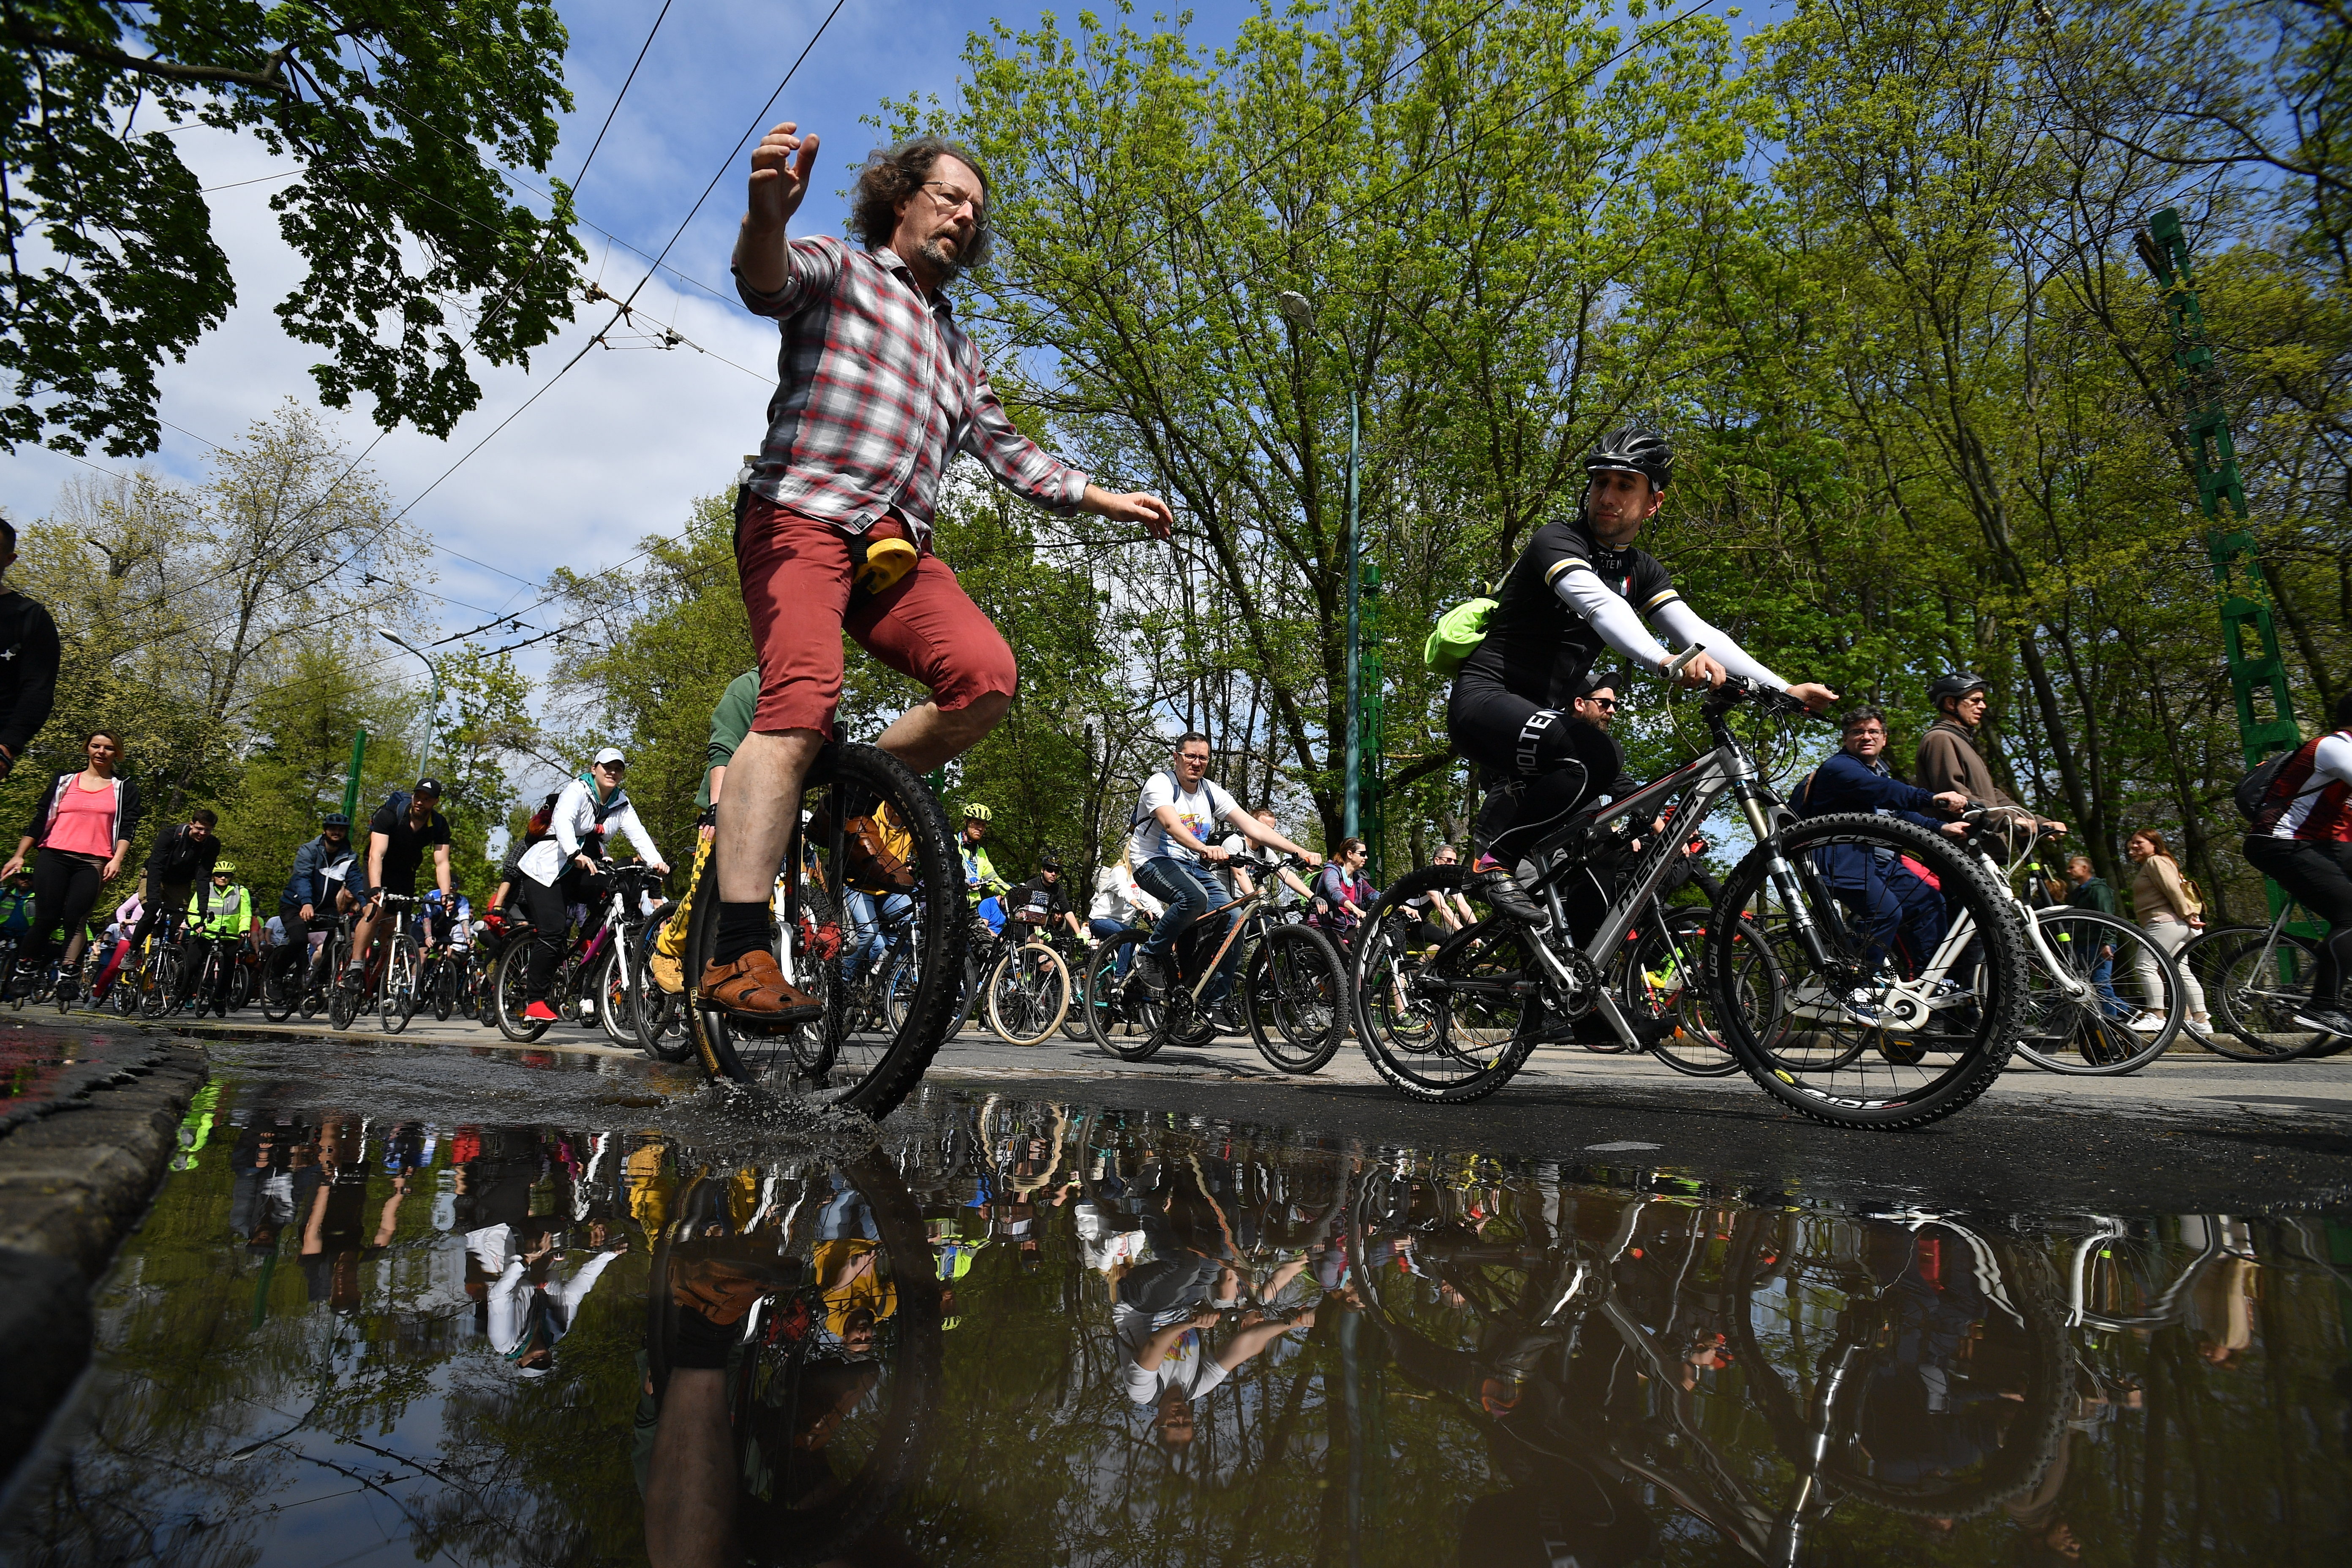 Ilyen volt az I Bike Budapest 2022 felvonulás - fotók - Blikk